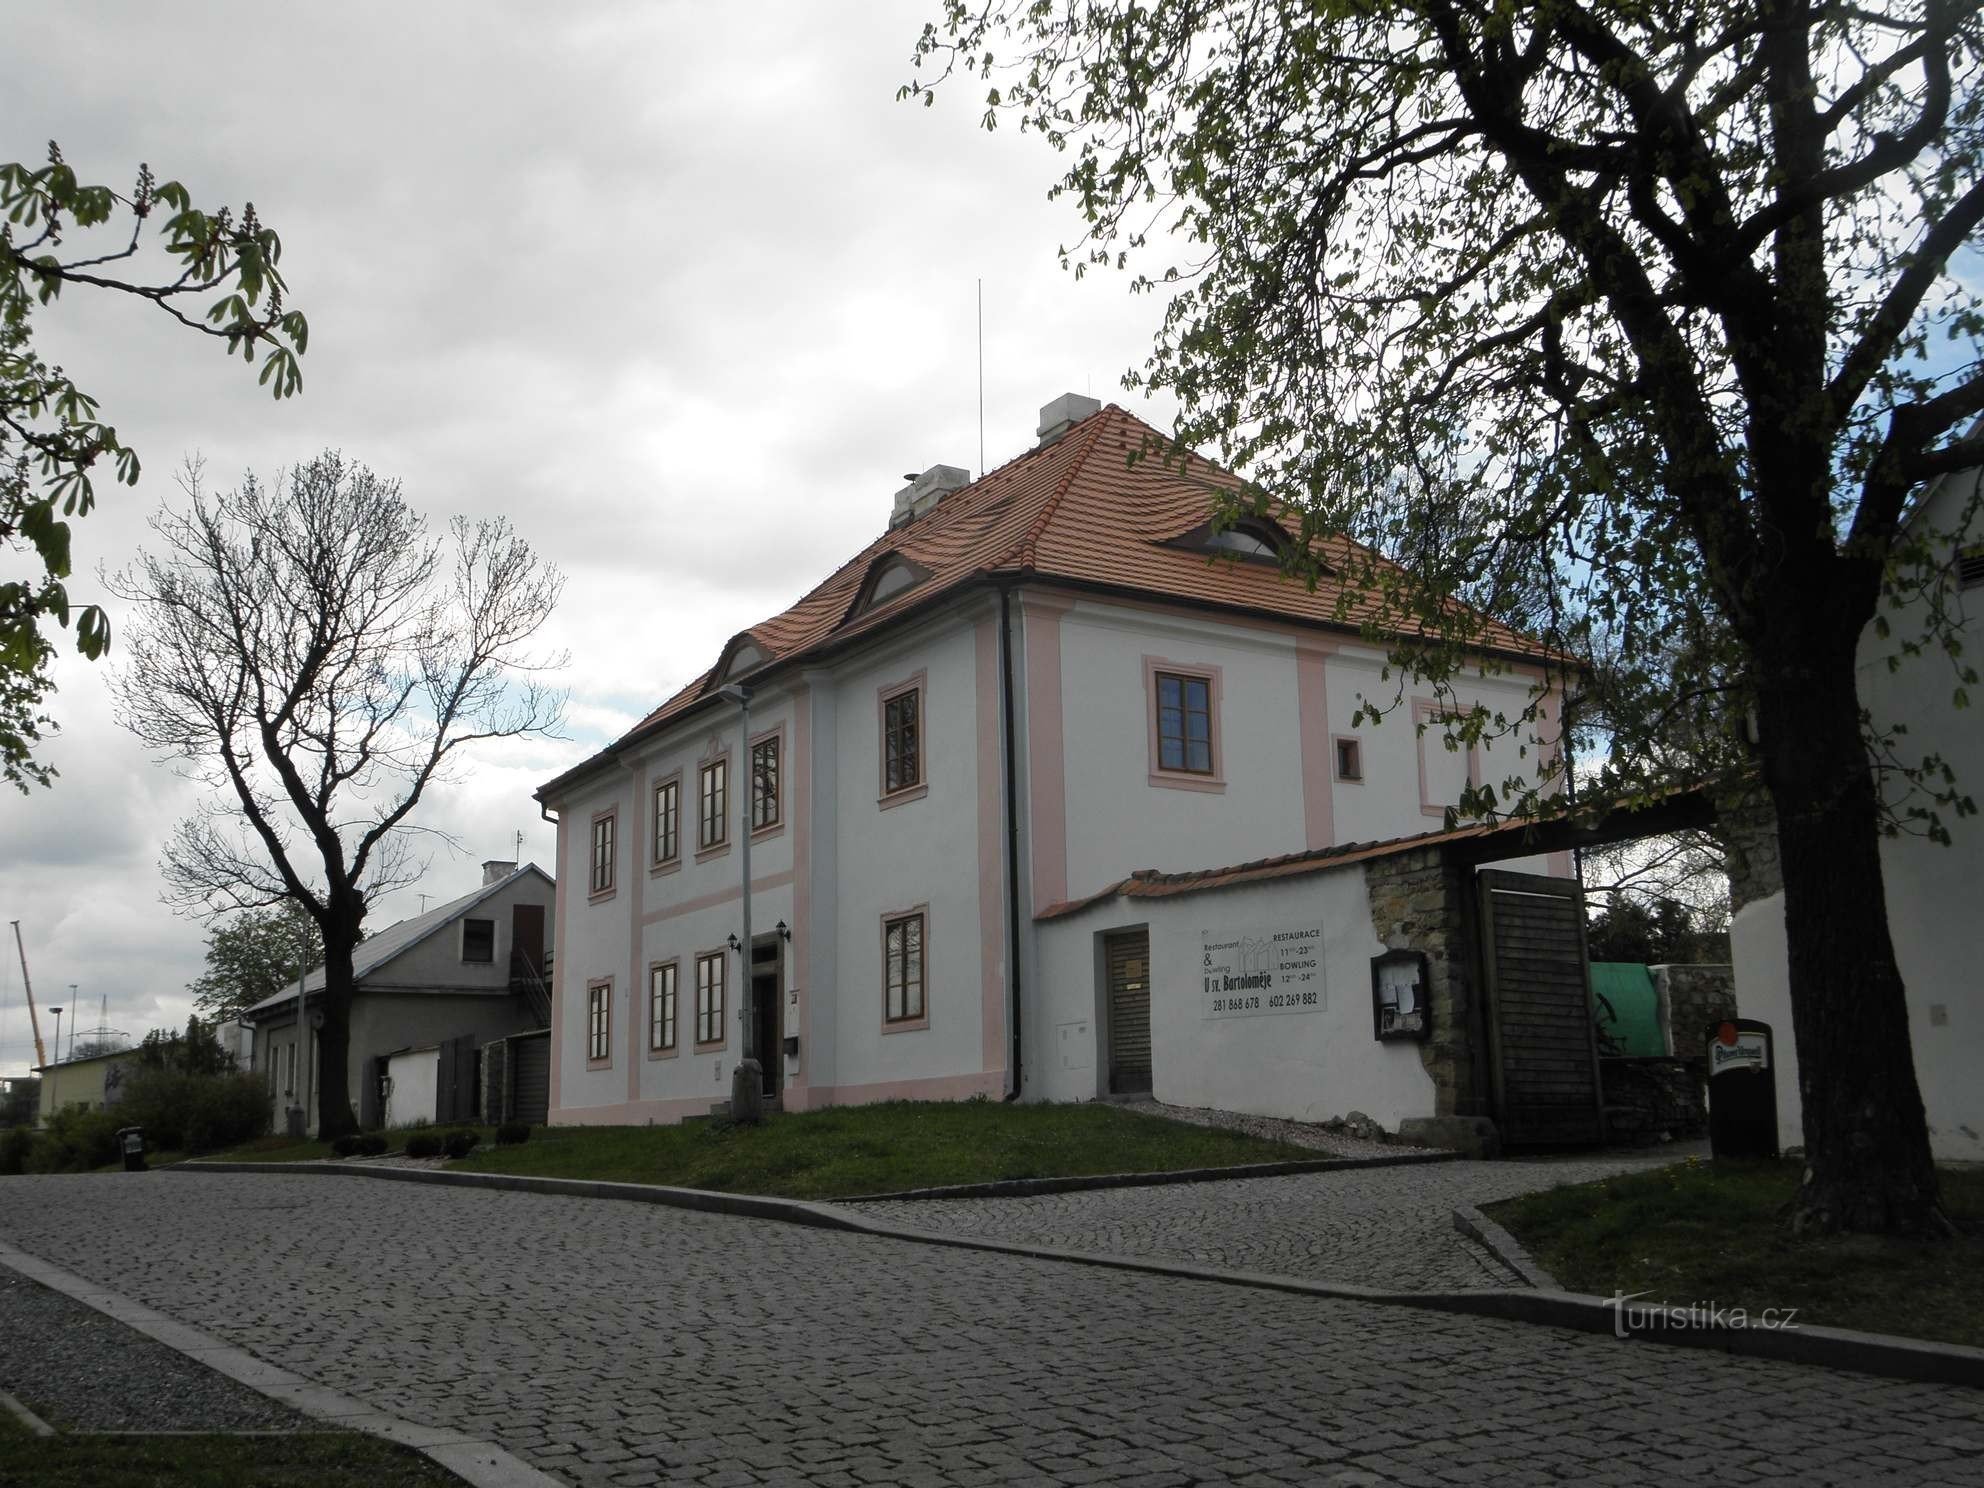 Župnišče iz 18. stoletja nasproti cerkve sv. Bartolomeja - 25.4.2012